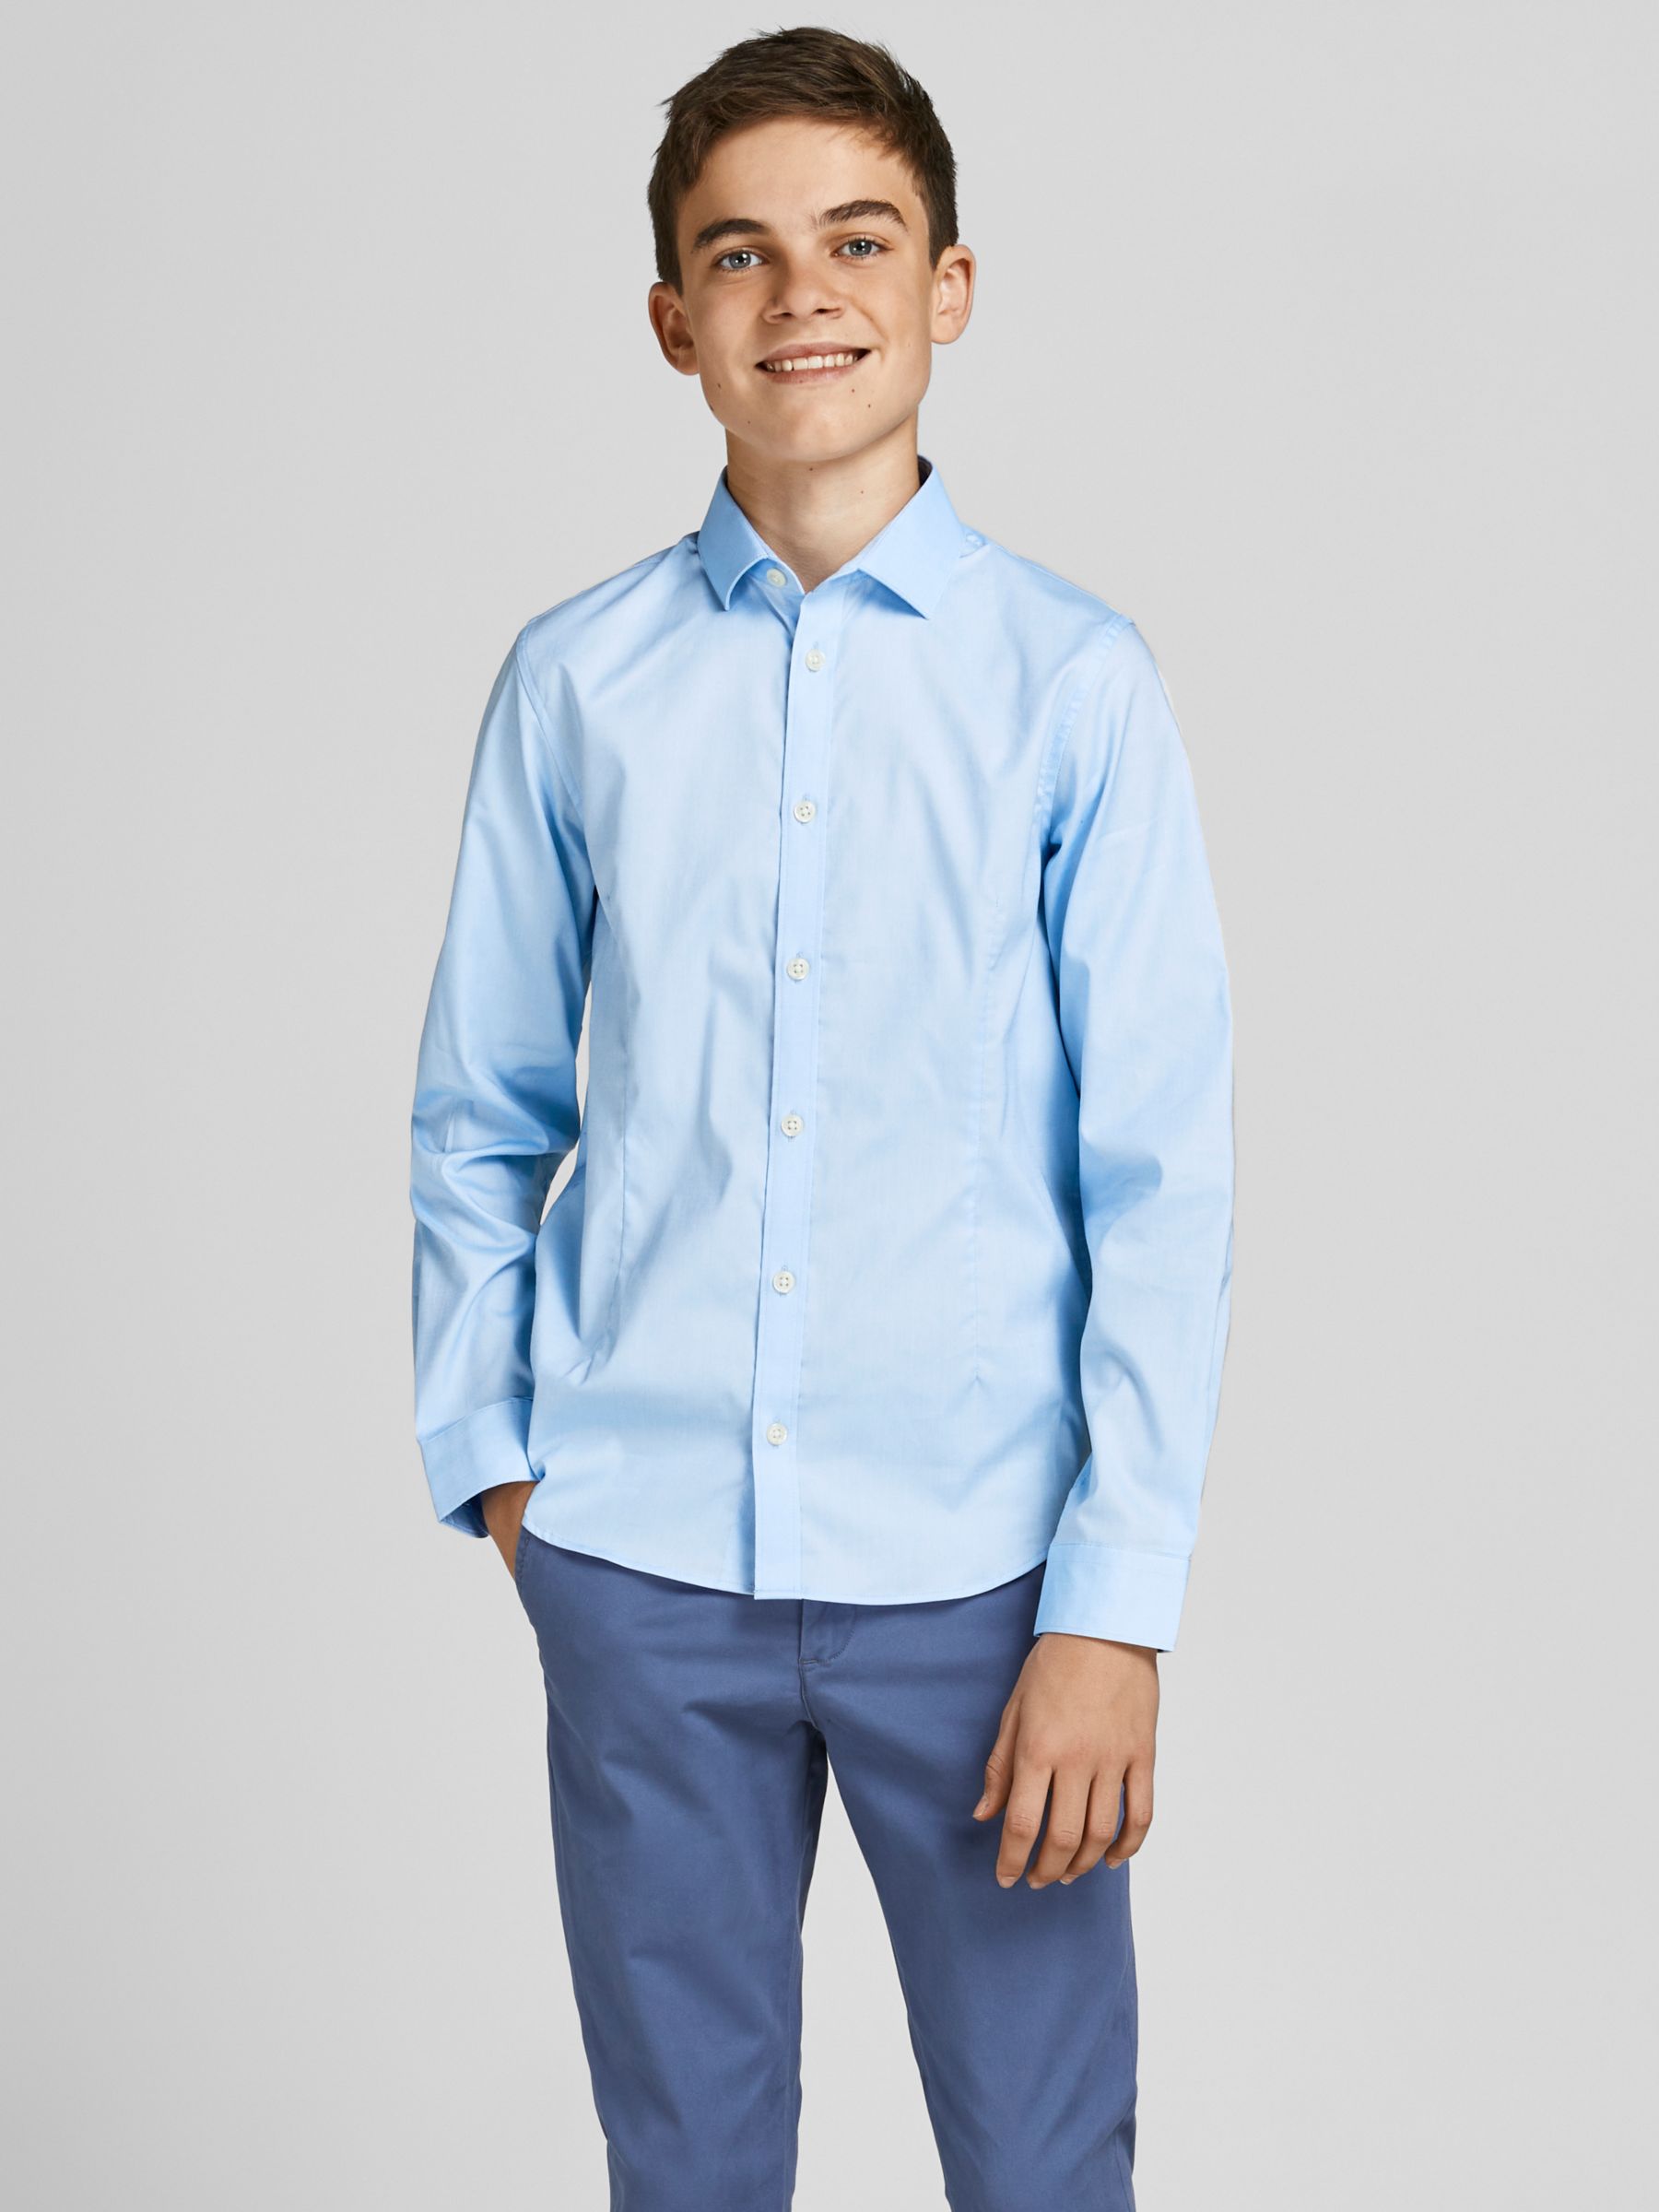 Jack & Jones Junior Solid Formal Shirt, Light Blue, 8 years